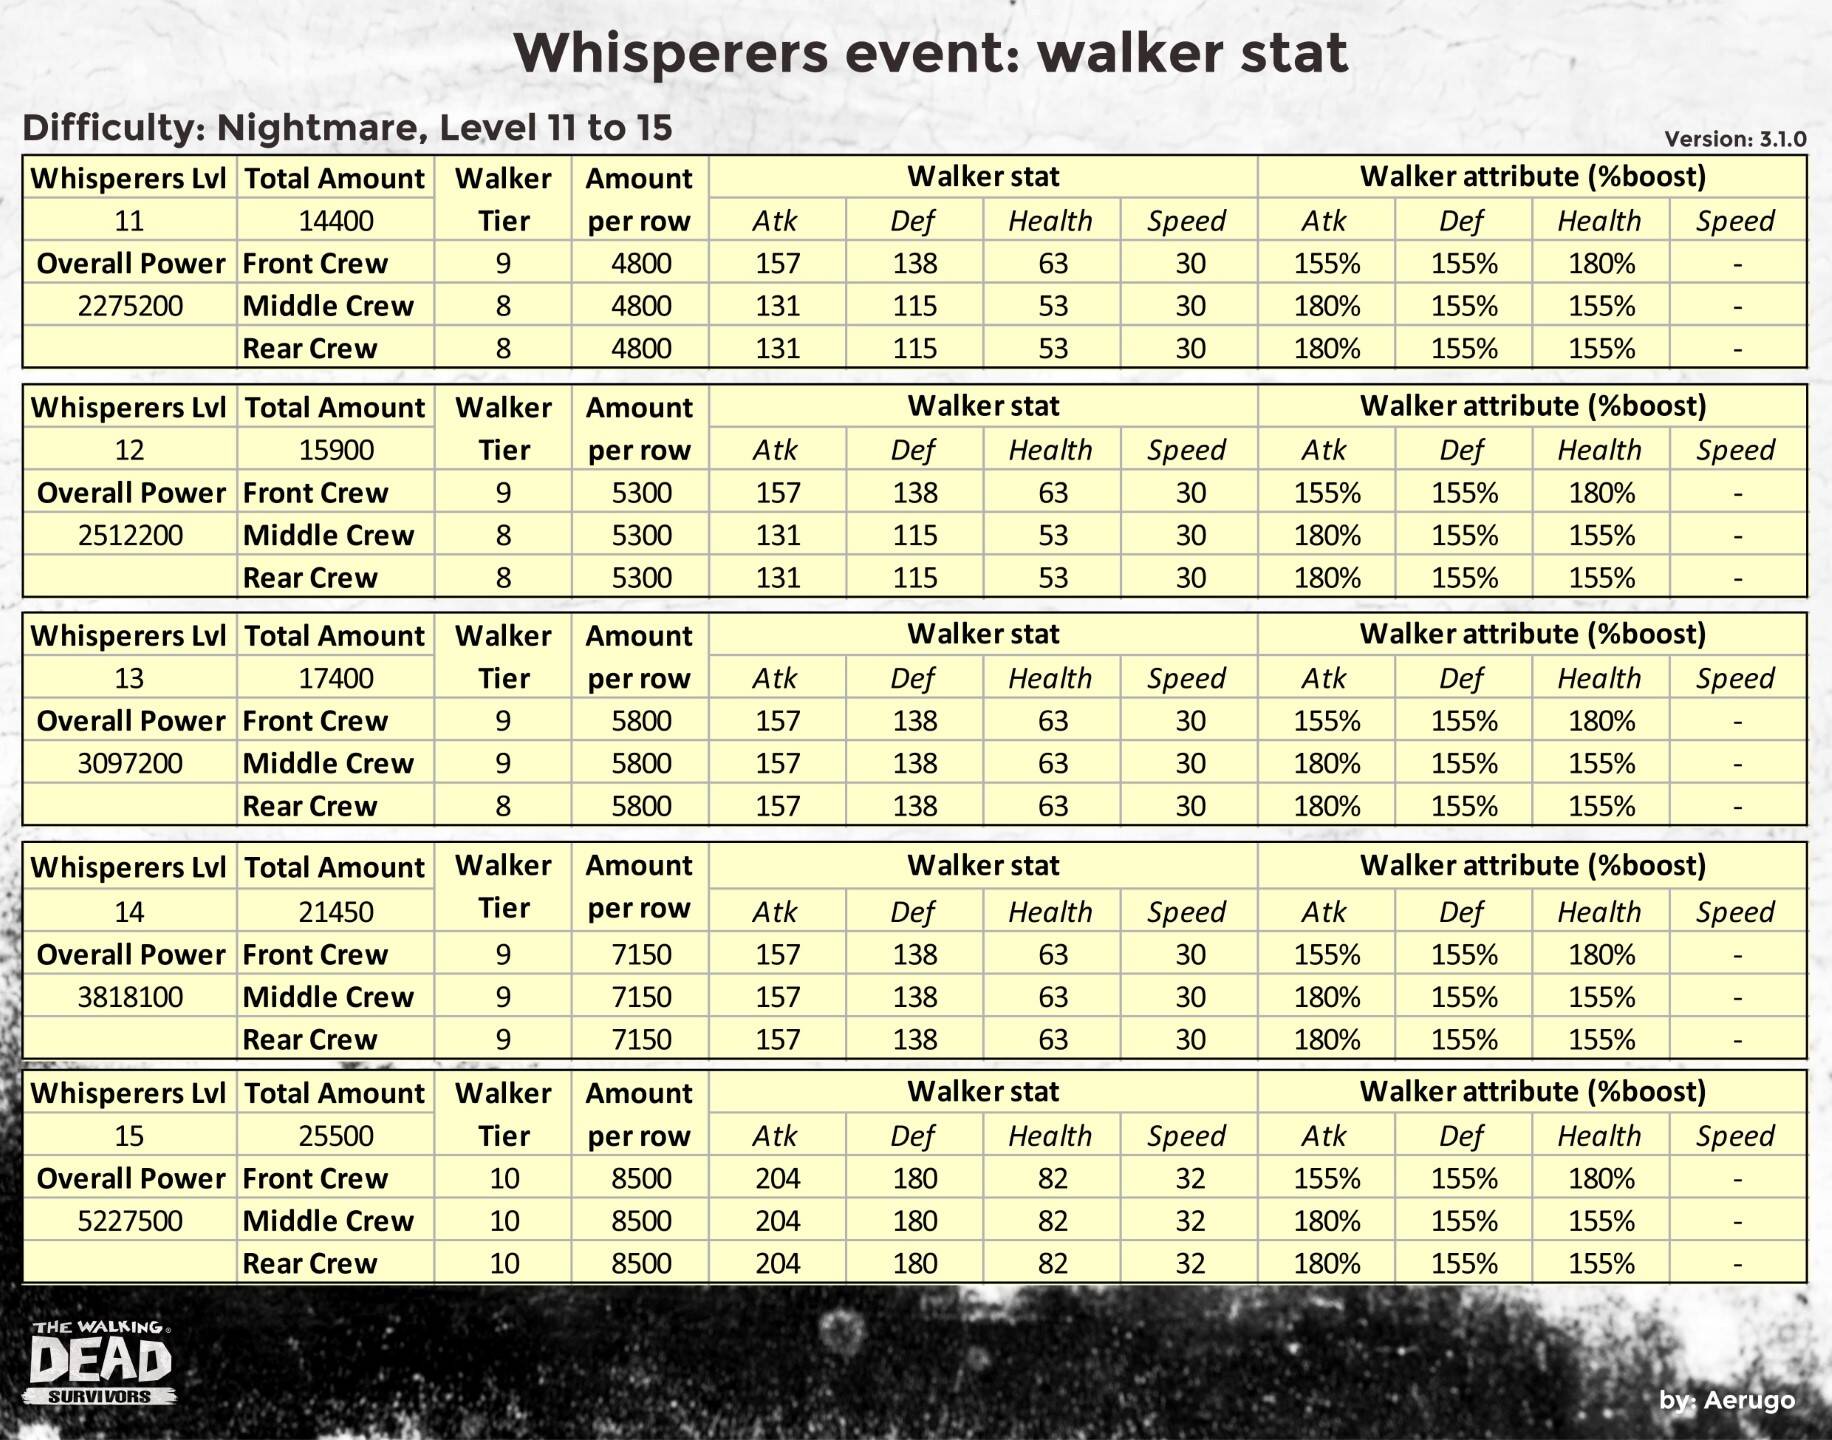 Whisperers_walkerstat_v3.1.0_part15 (1).jpg